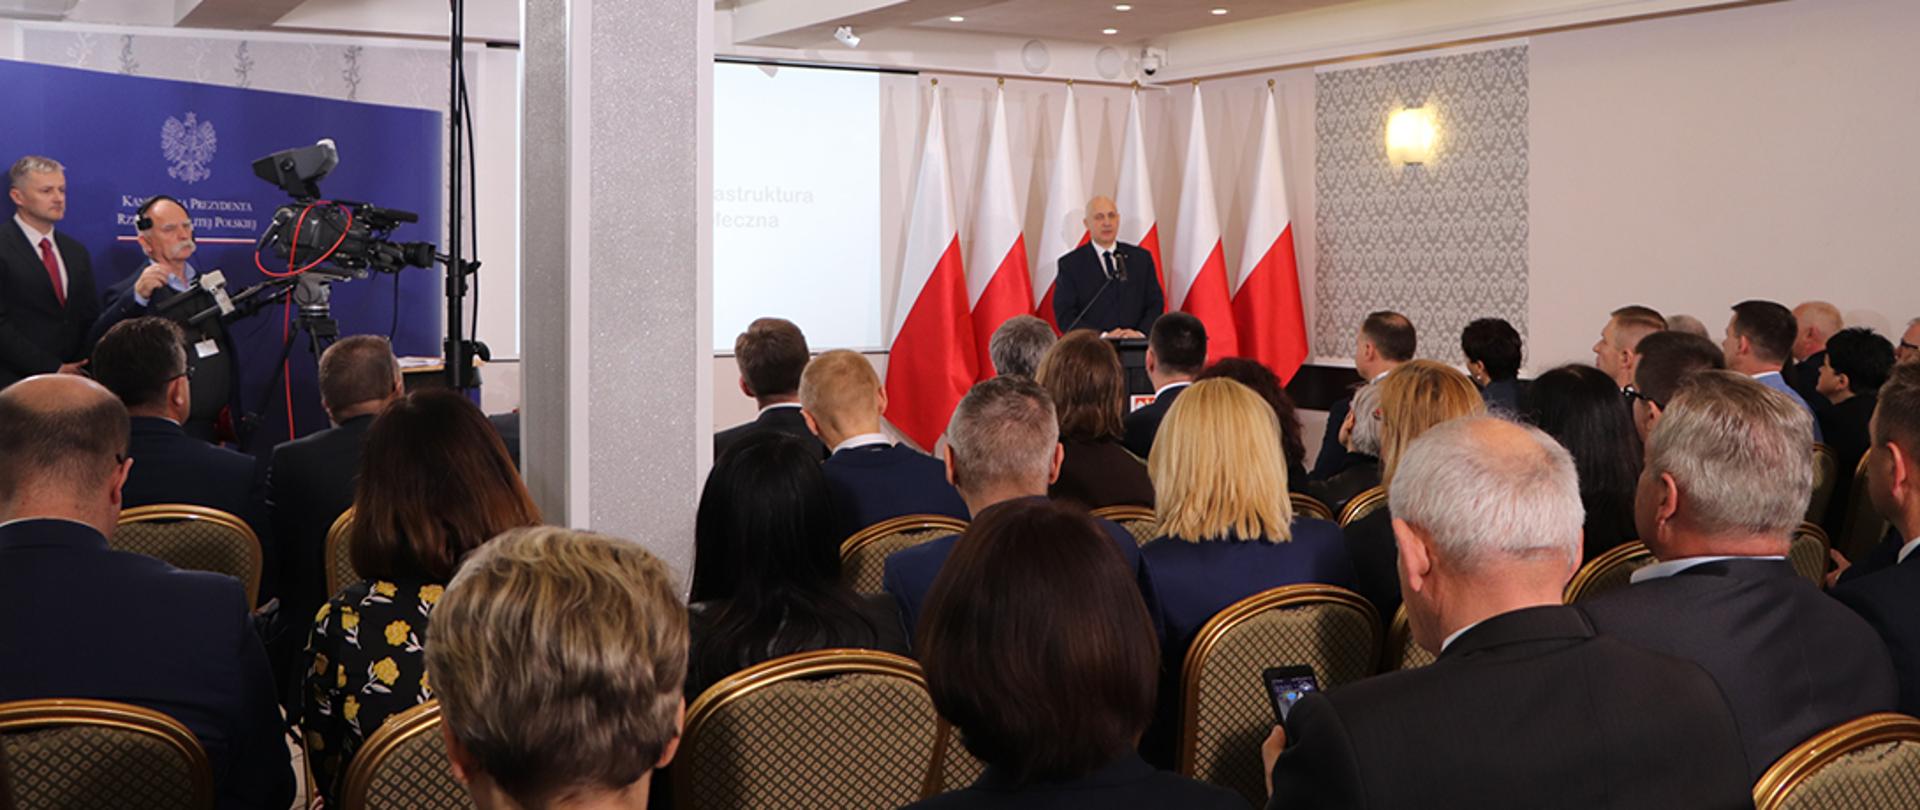 Minister Joachim Brudziński na konferencji "Perspektywy dla mieszkańców obszarów wiejskich" w Kalsku.